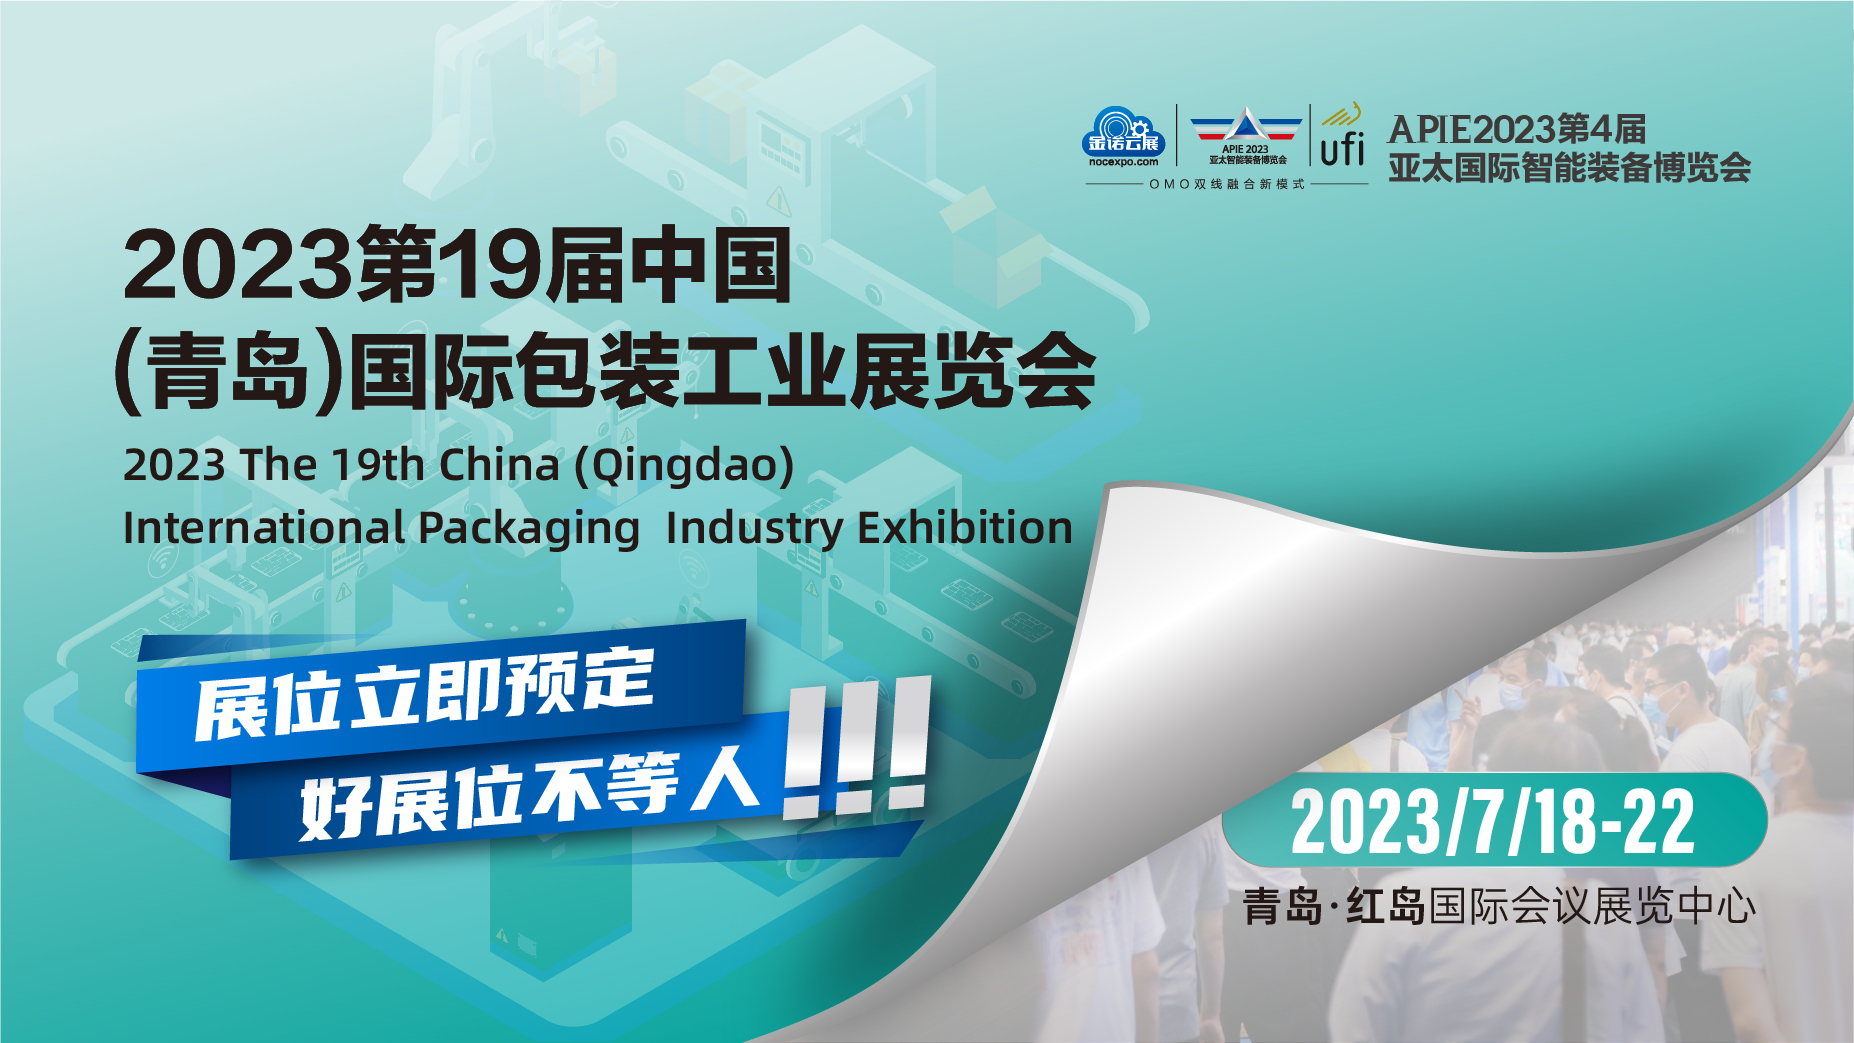 乘势而上，抢占商机丨相约2023第19届中国青岛国际包装工业展